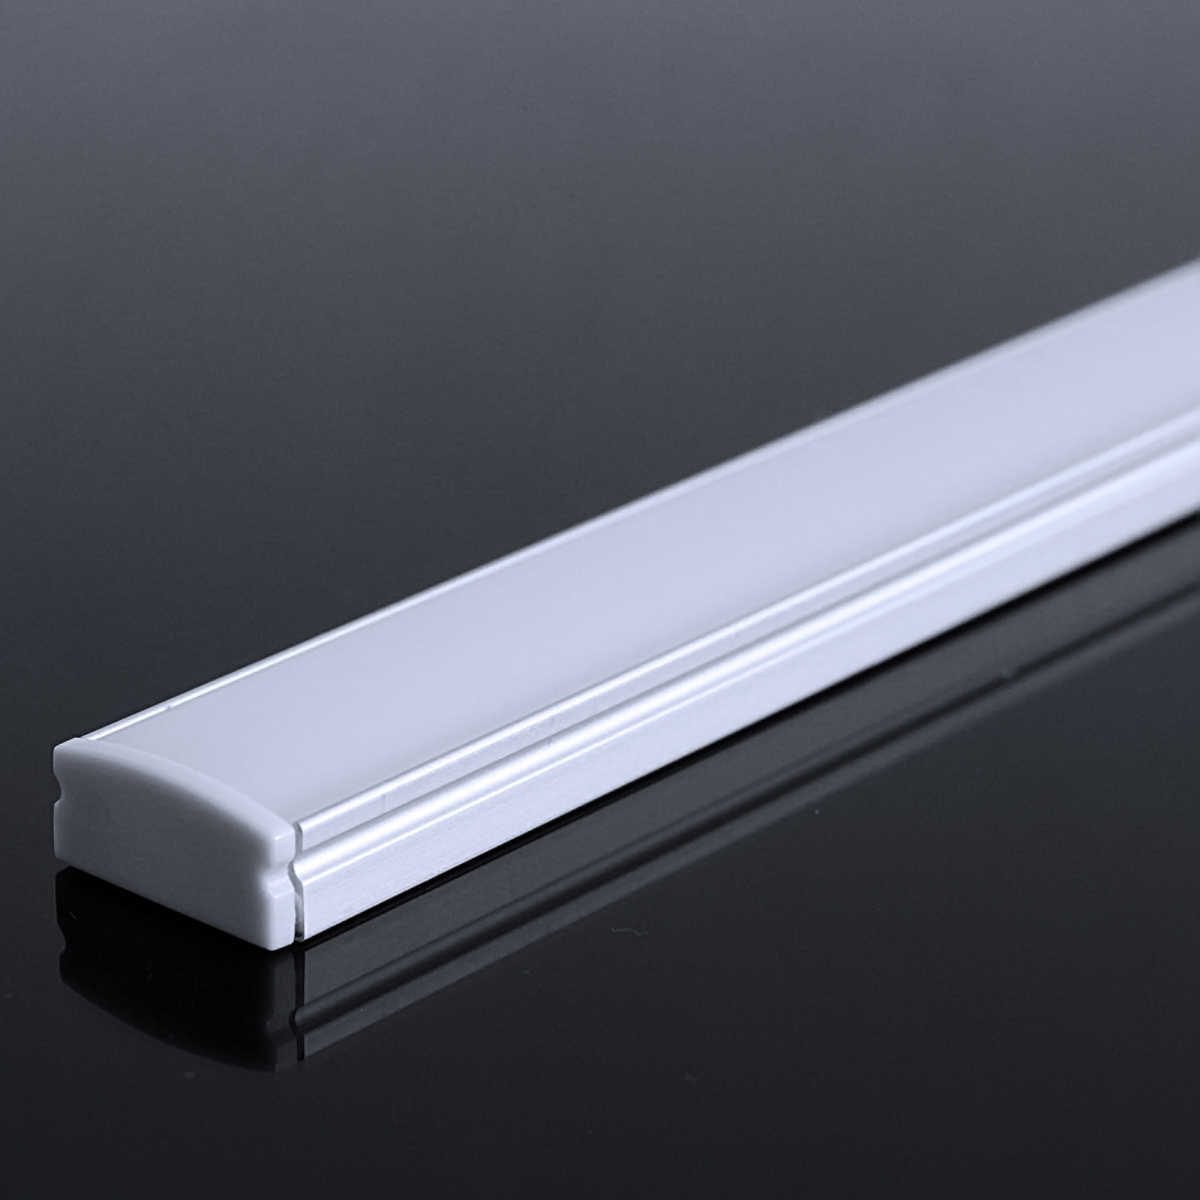 LED Flachprofil "Slim-Line" | Abdeckung diffus | Zuschnitt auf 135cm |